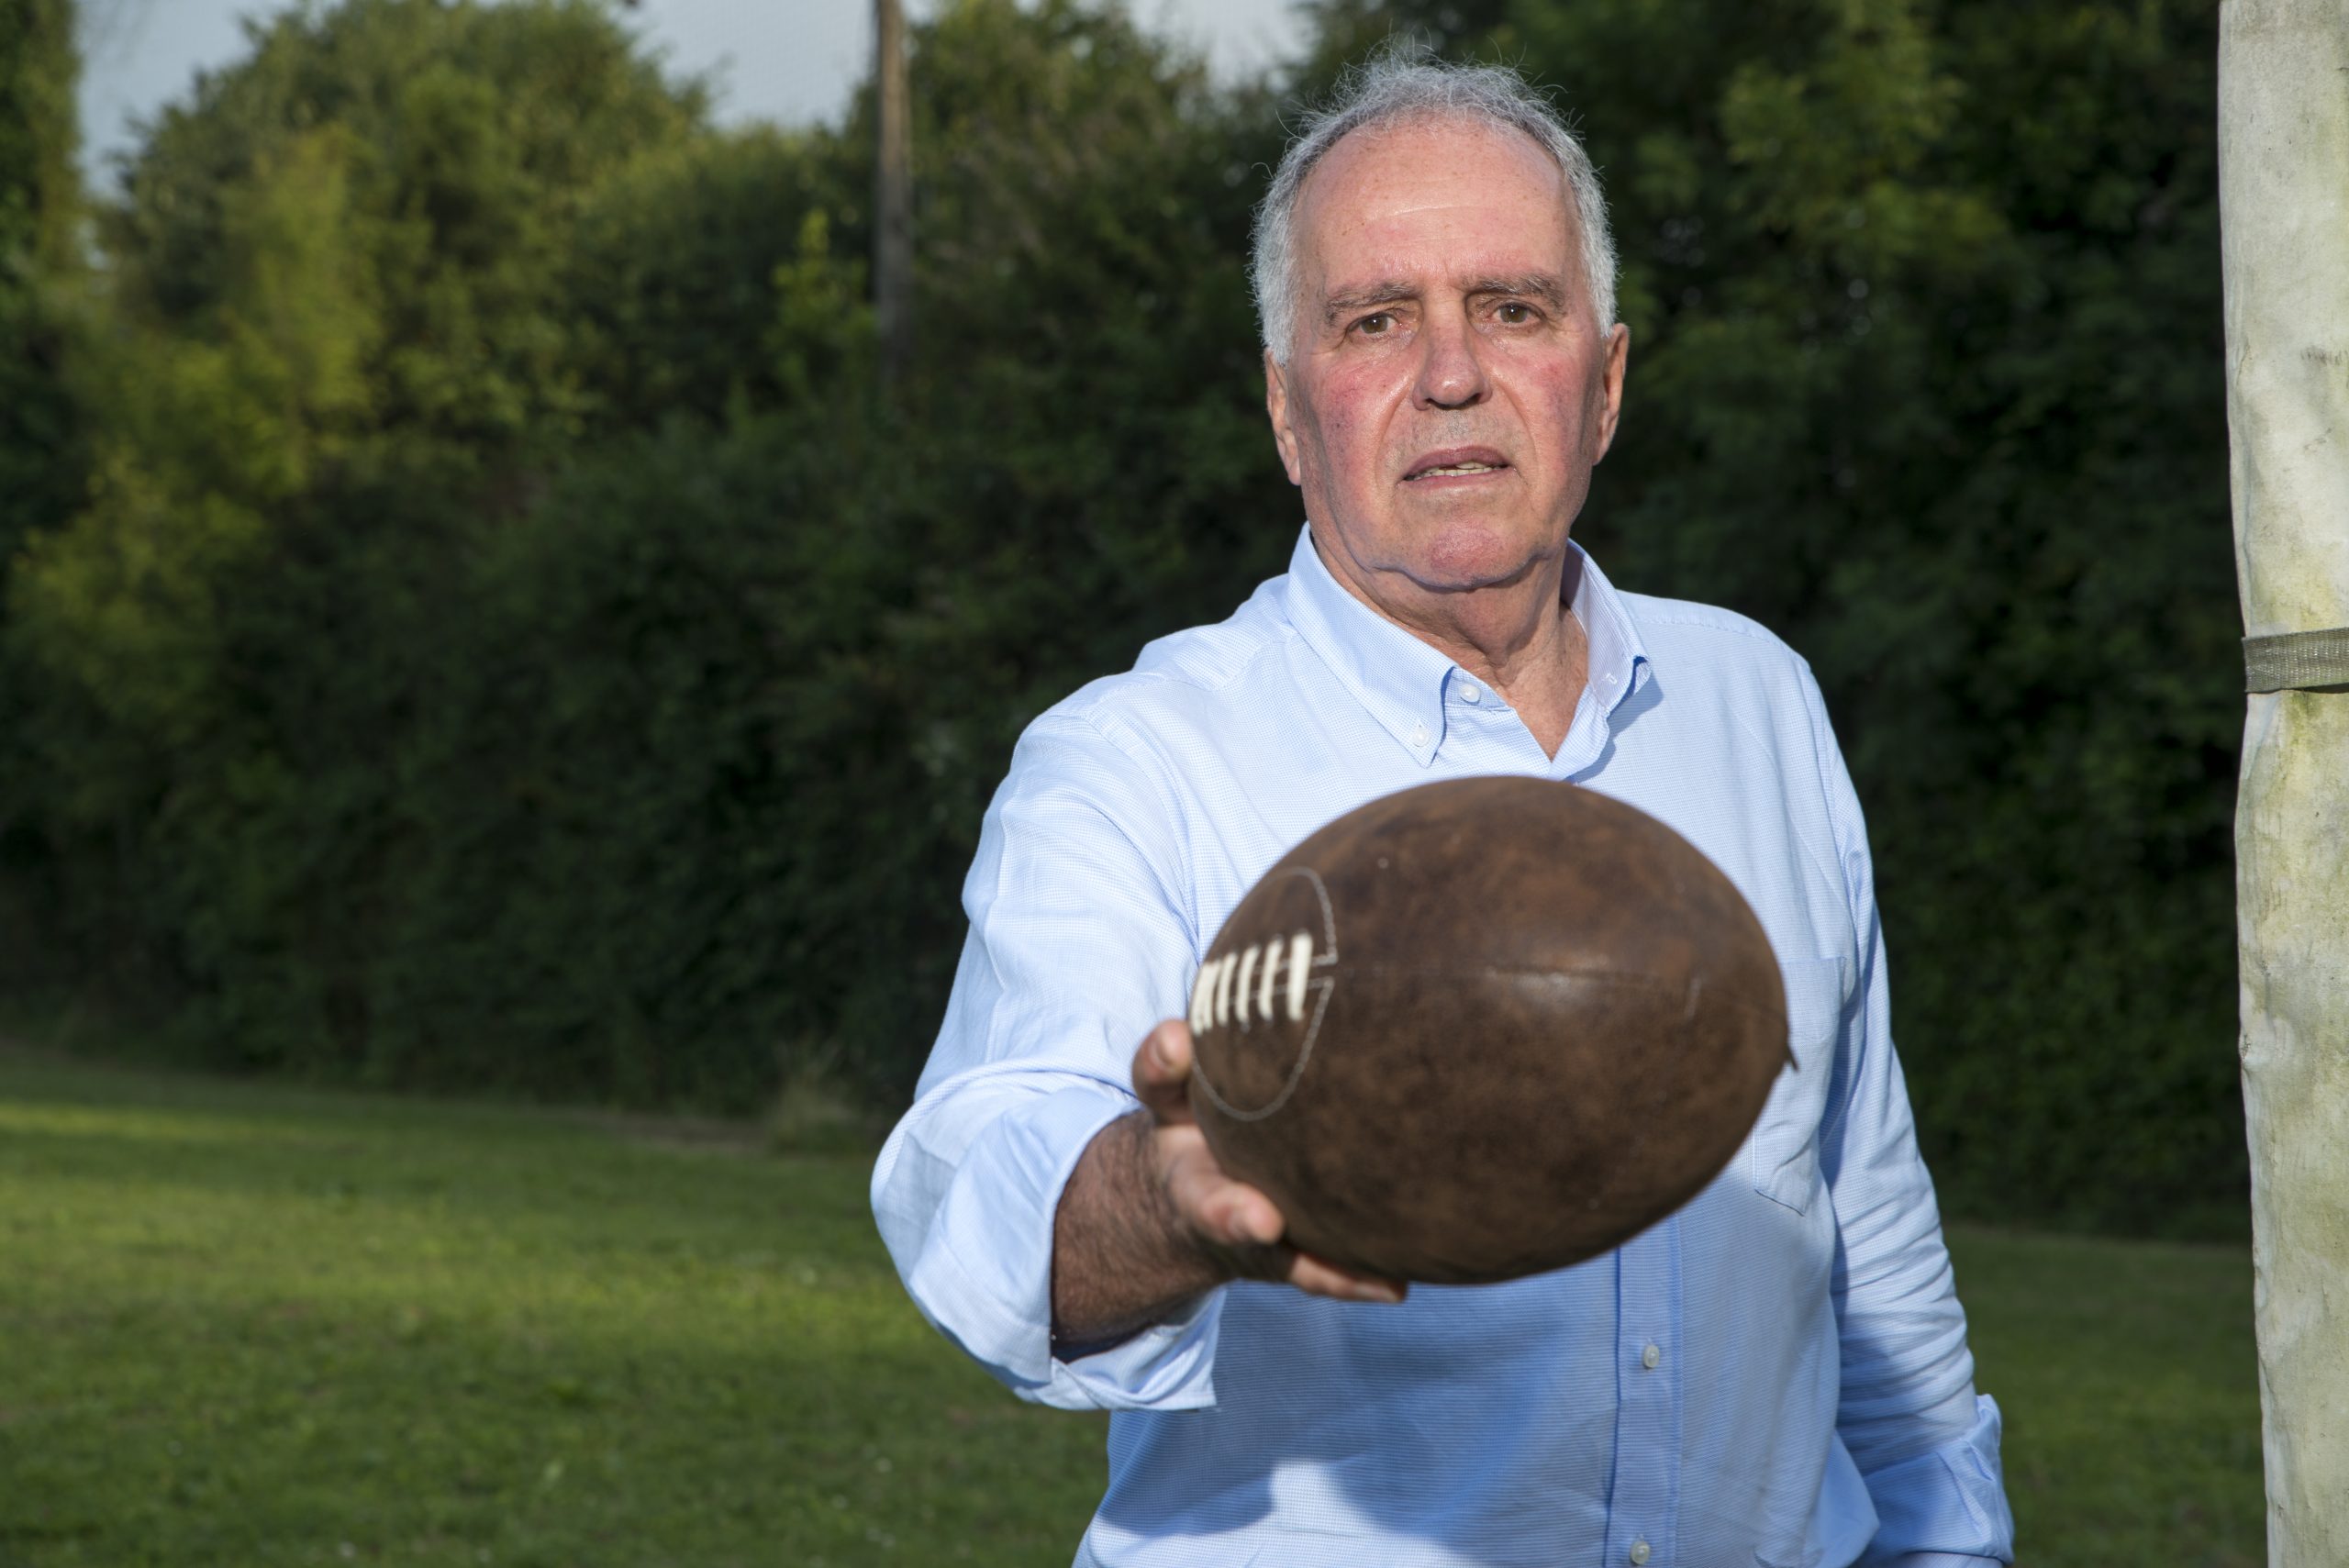 Carta de Alfonso Feijoo al rugby: “Algunos siguen sin entender nada”